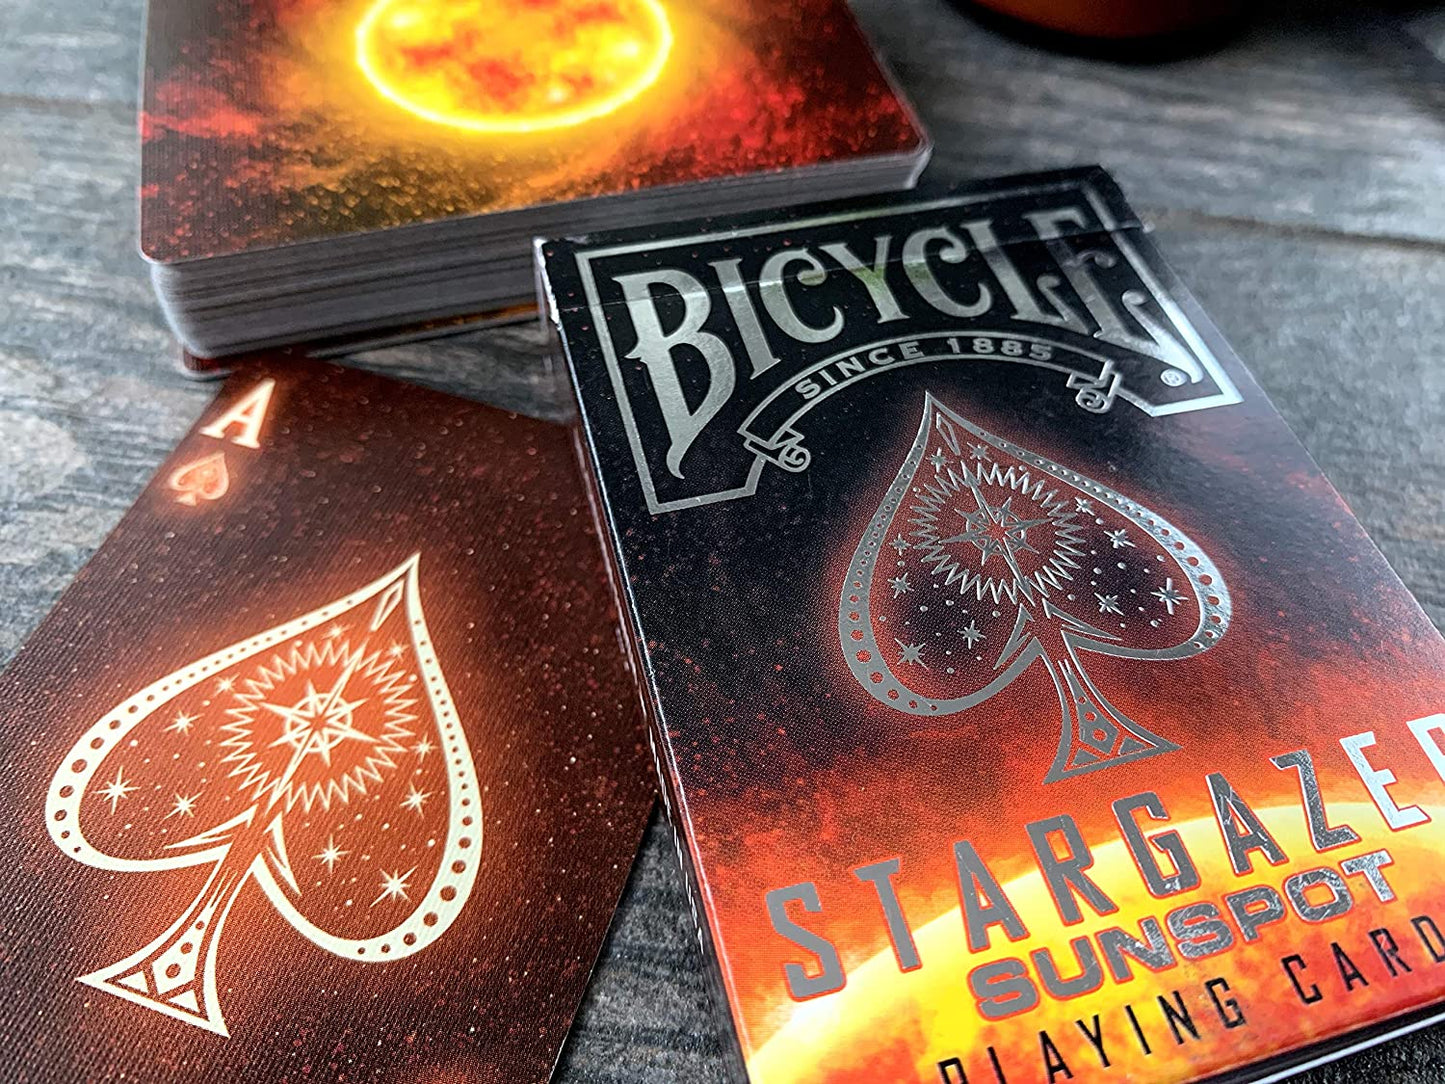 Bicycle® Cards - Stargazer Sunspot